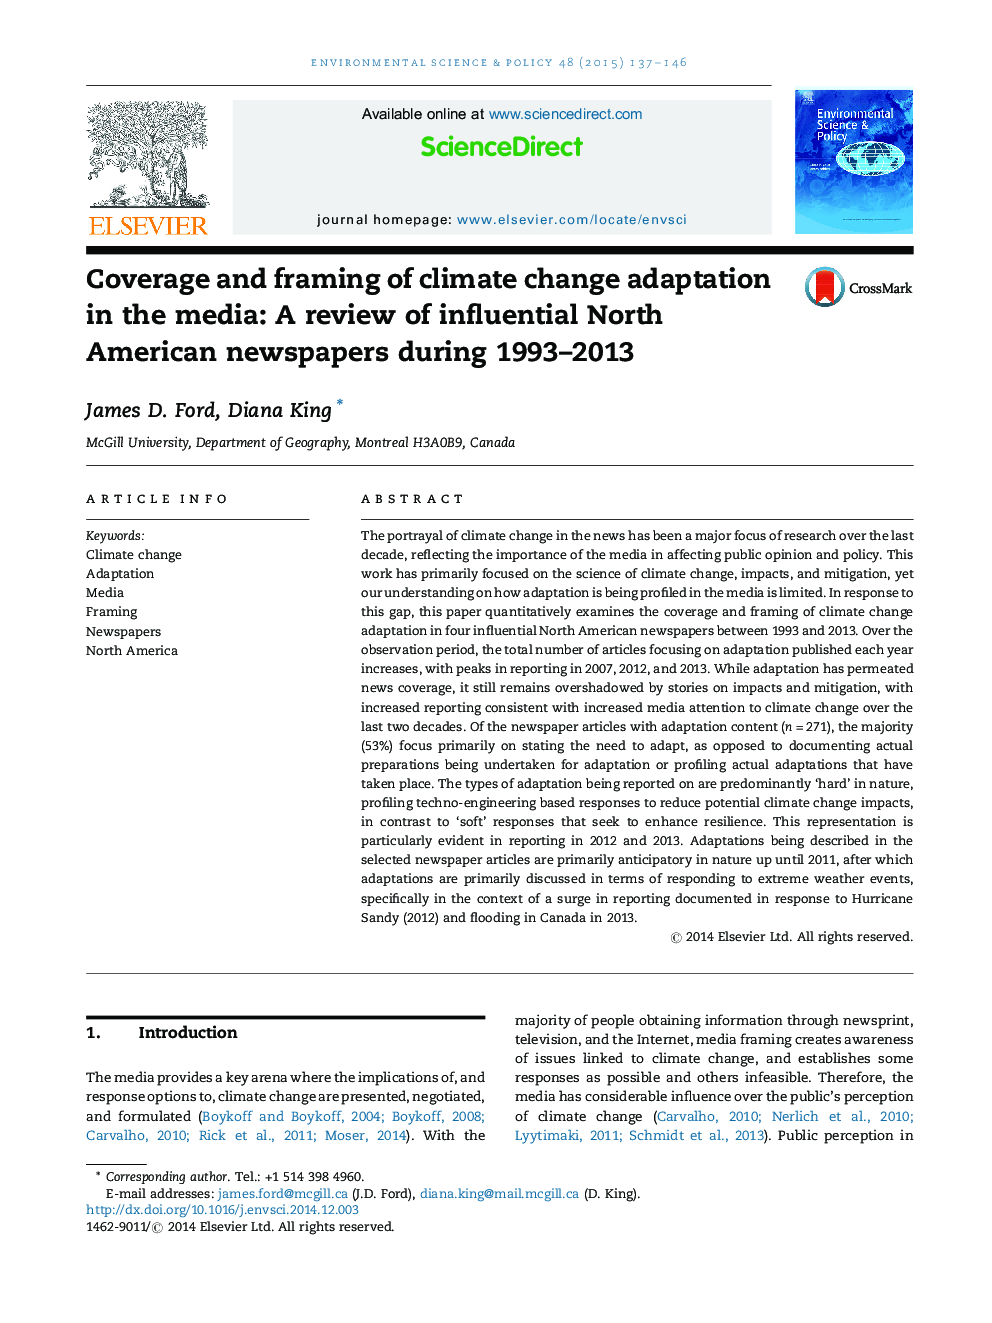 پوشش و شکل گیری سازگاری تغییرات آب و هوایی در رسانه ها: بررسی روزنامه های موثر آمریکای شمالی طی سال های 1993 تا 2013 